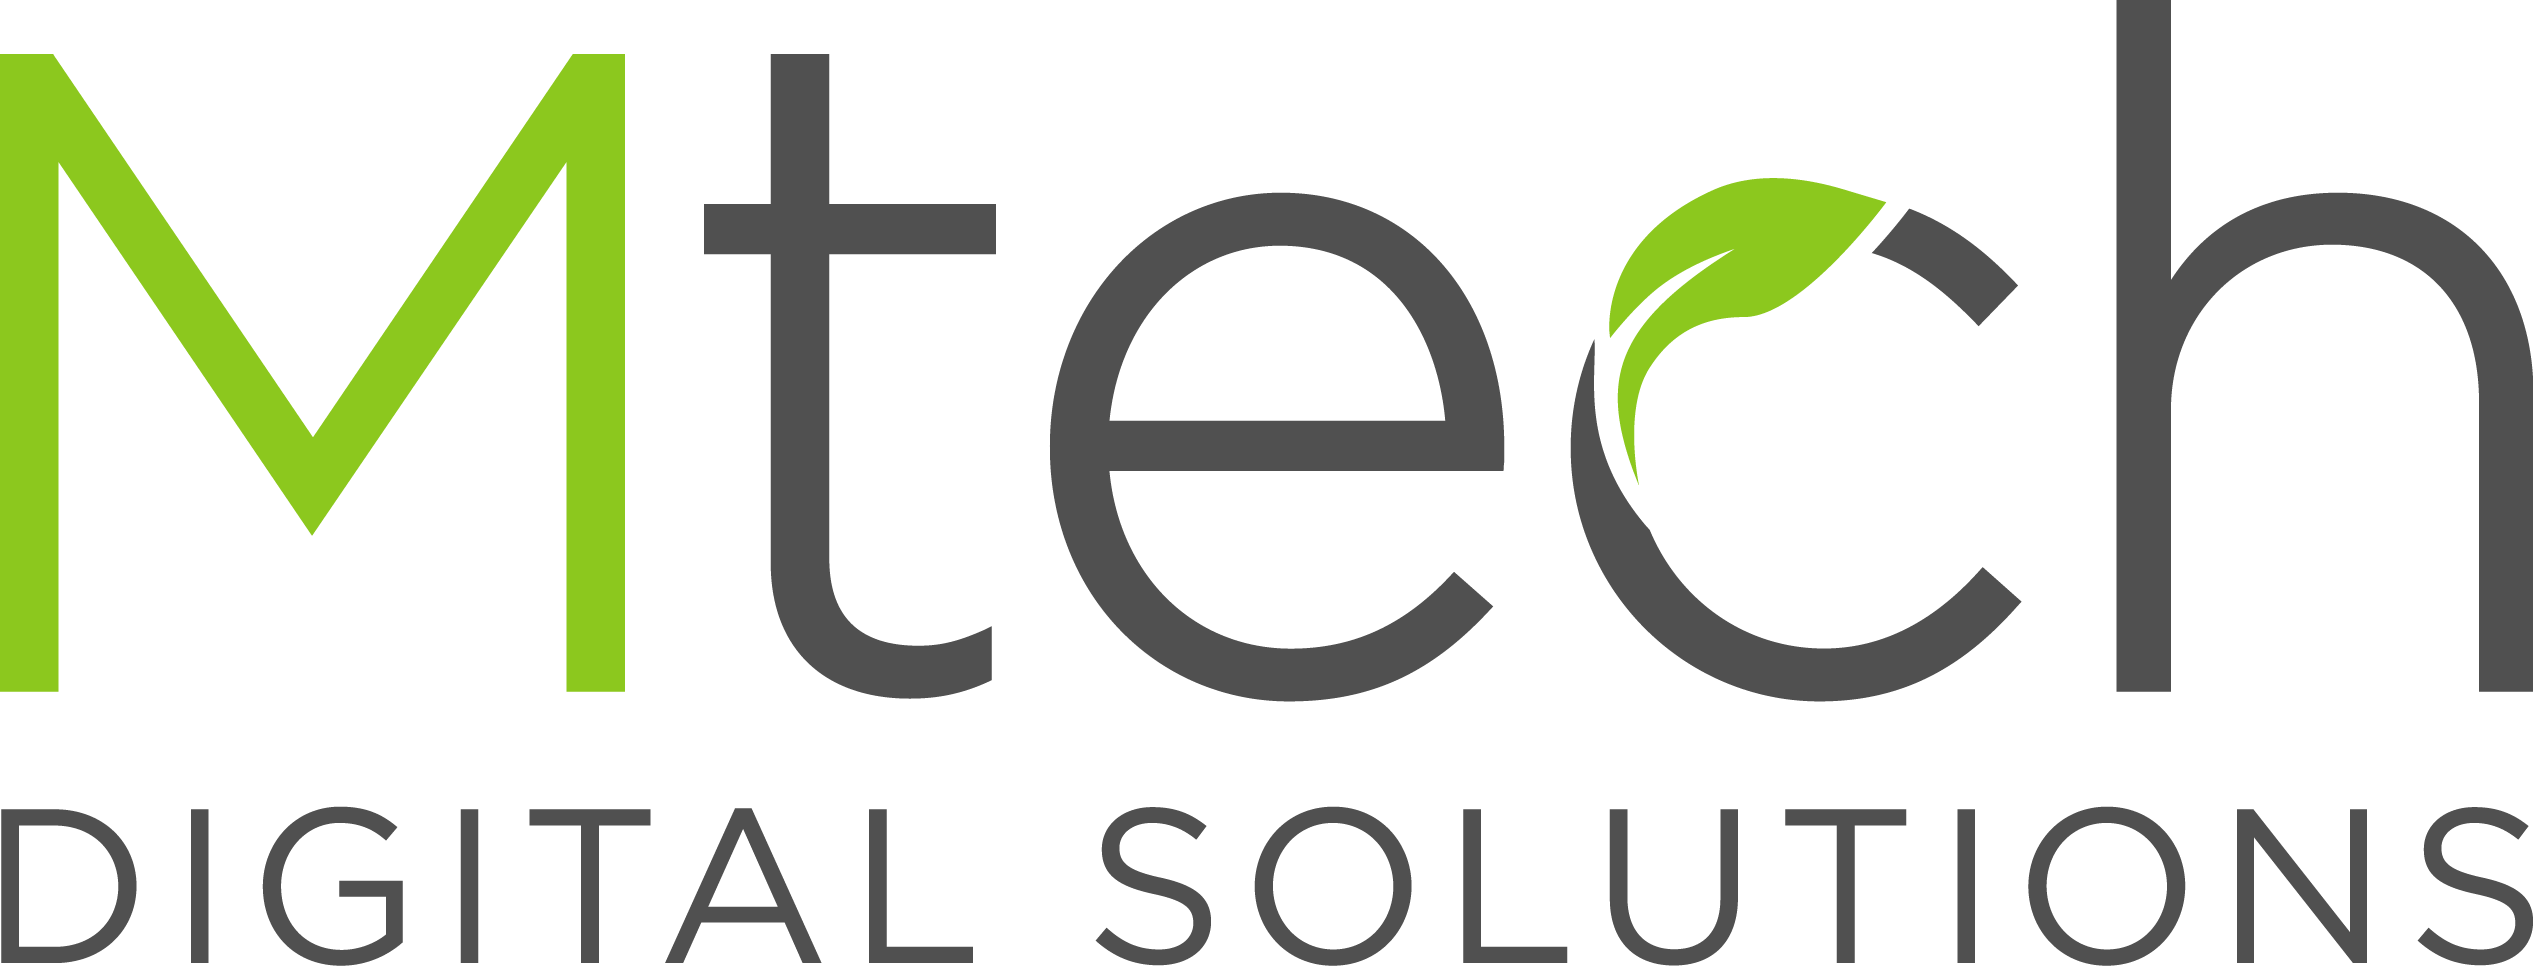 M.Tech Logo - Mtech Group Ltd